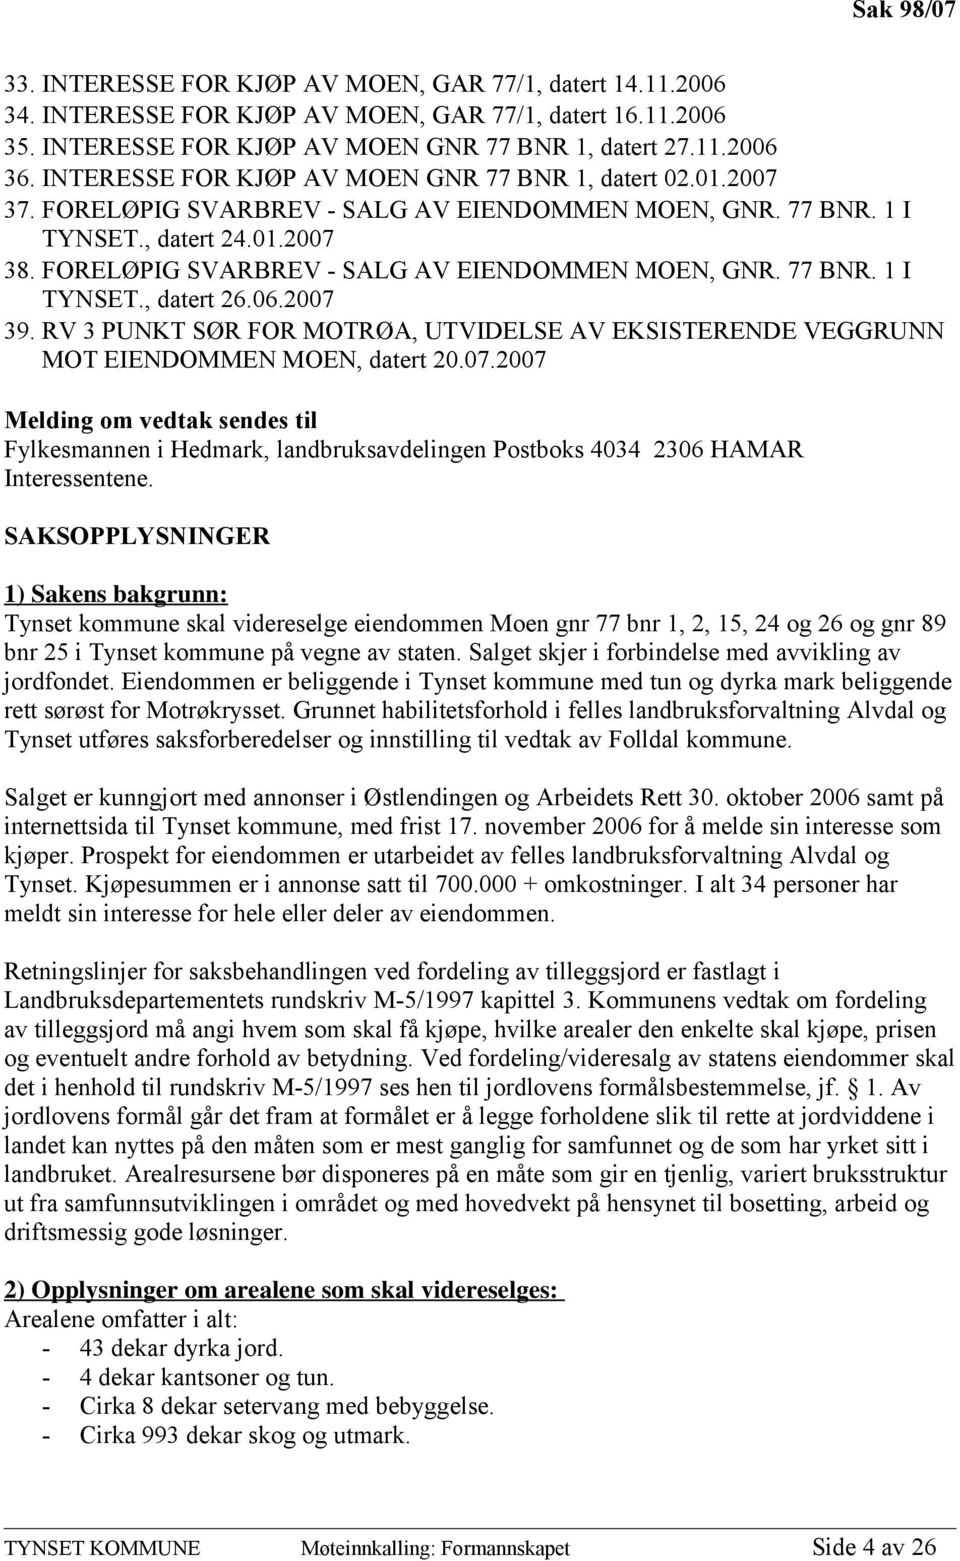 FORELØPIG SVARBREV - SALG AV EIENDOMMEN MOEN, GNR. 77 BNR. 1 I TYNSET., datert 26.06.2007 